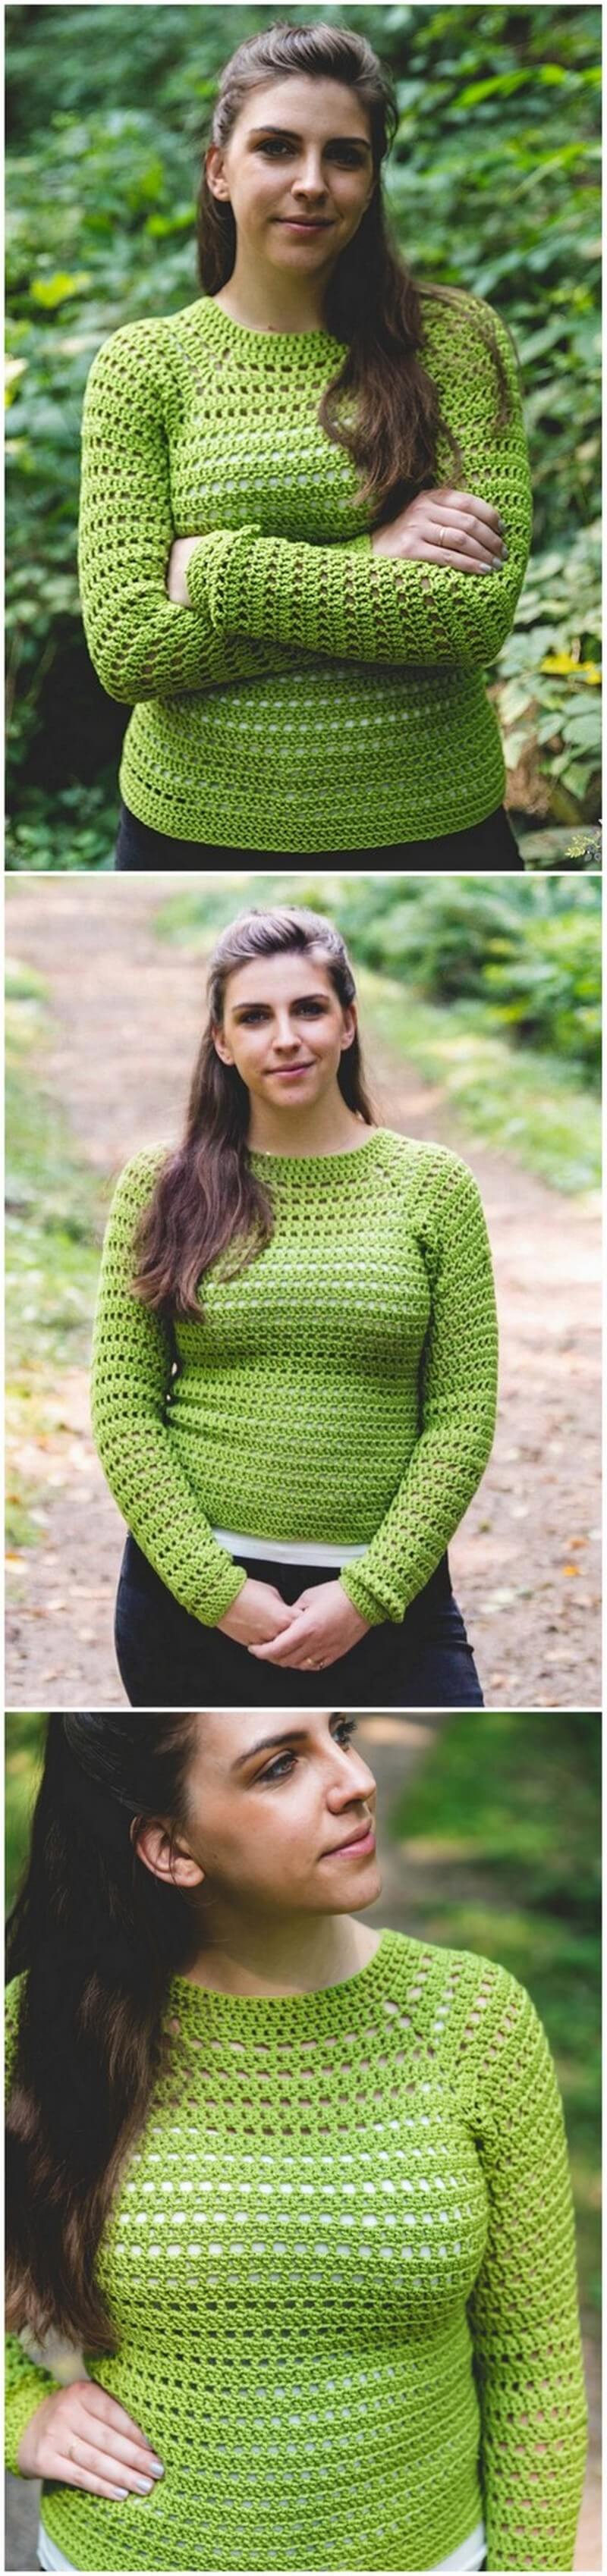 Crochet Sweater Pattern (8)